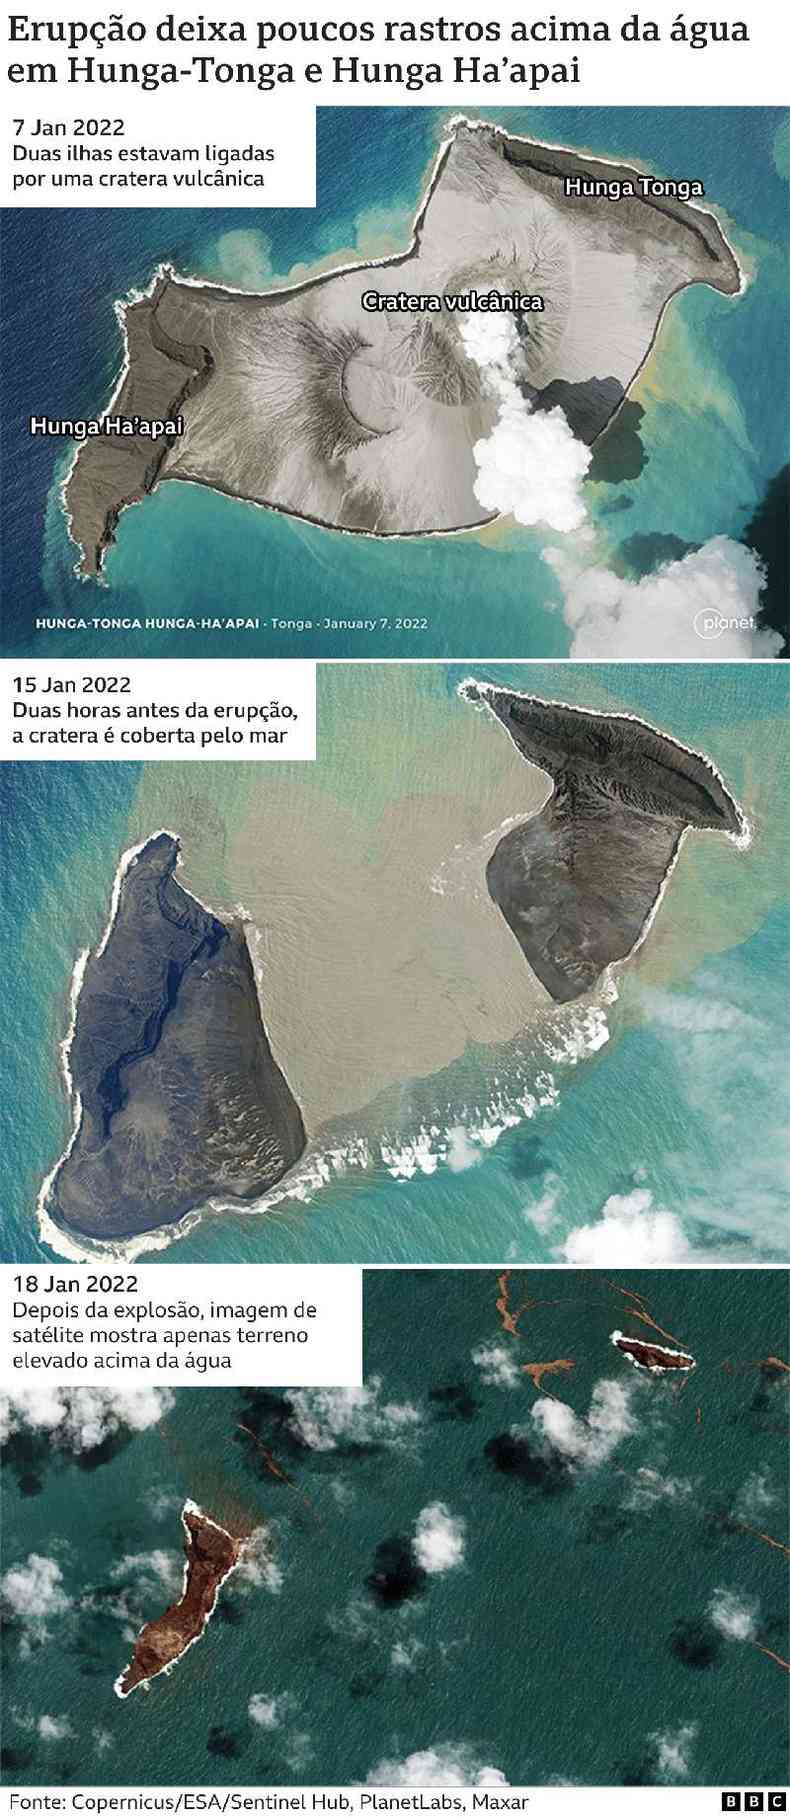 Infogrfico mostra imagens antes e depois da erupo do vulco